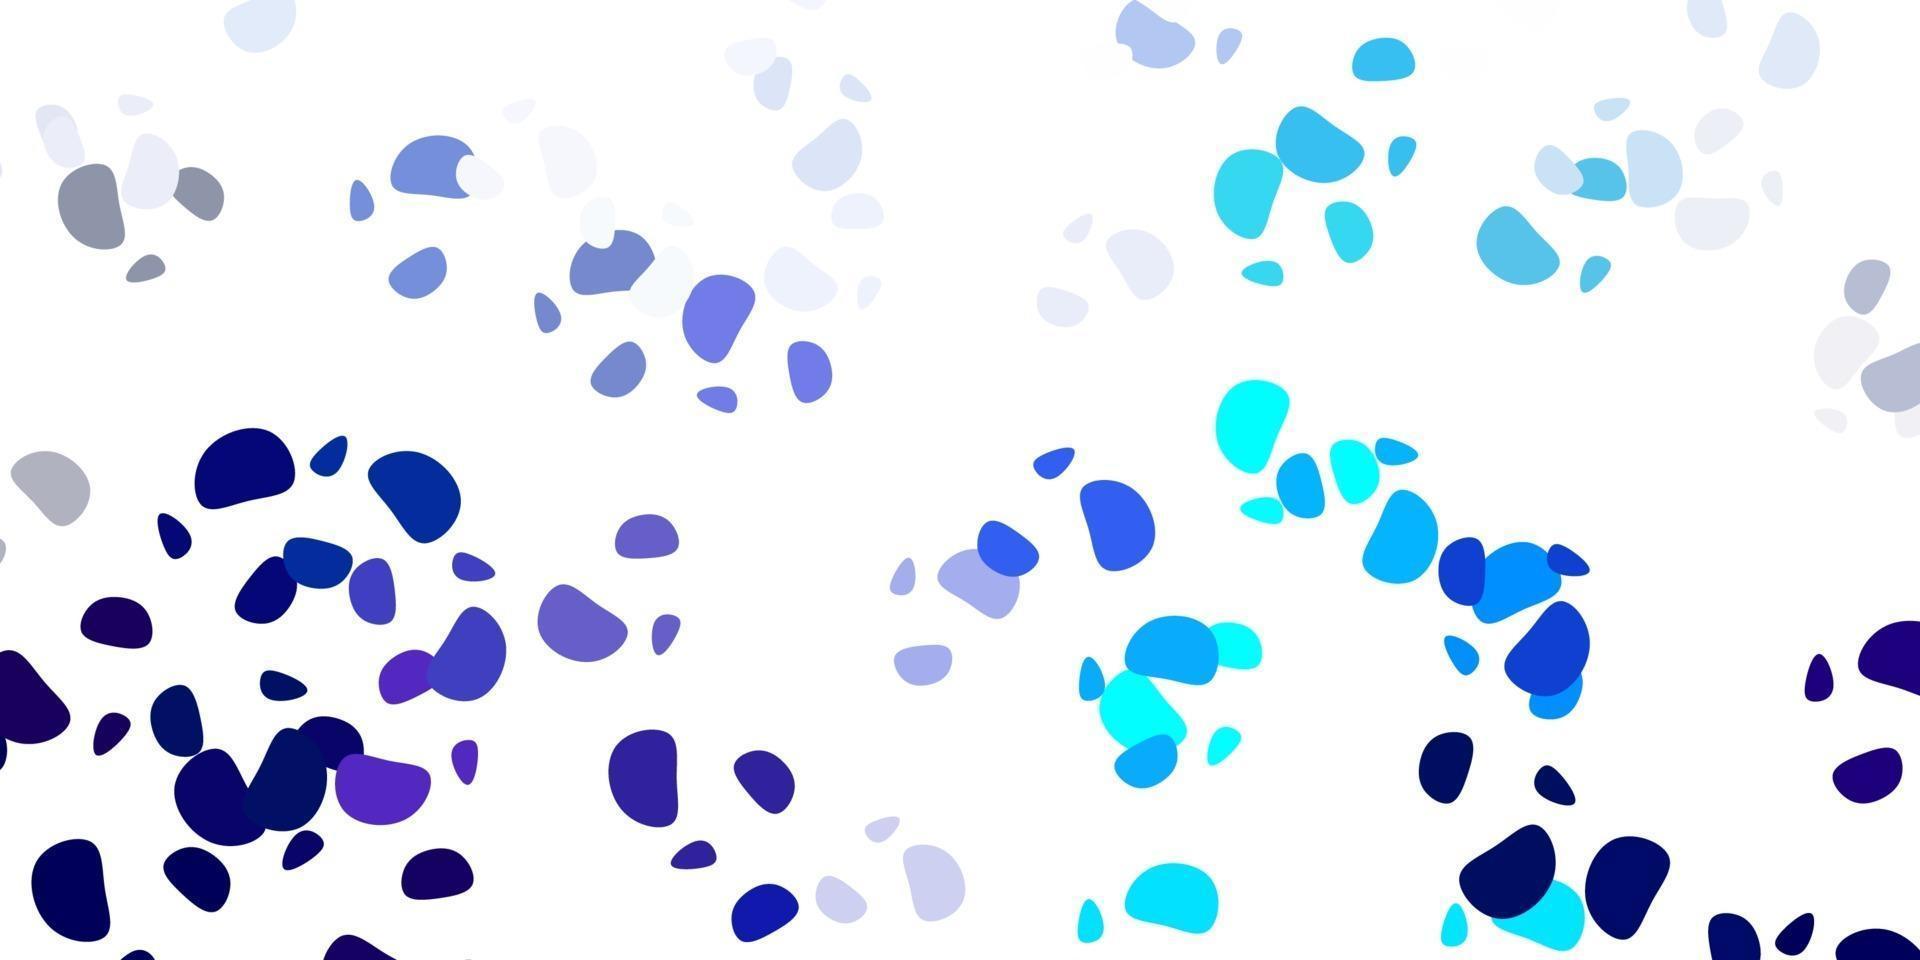 padrão de vetor azul claro com formas abstratas.